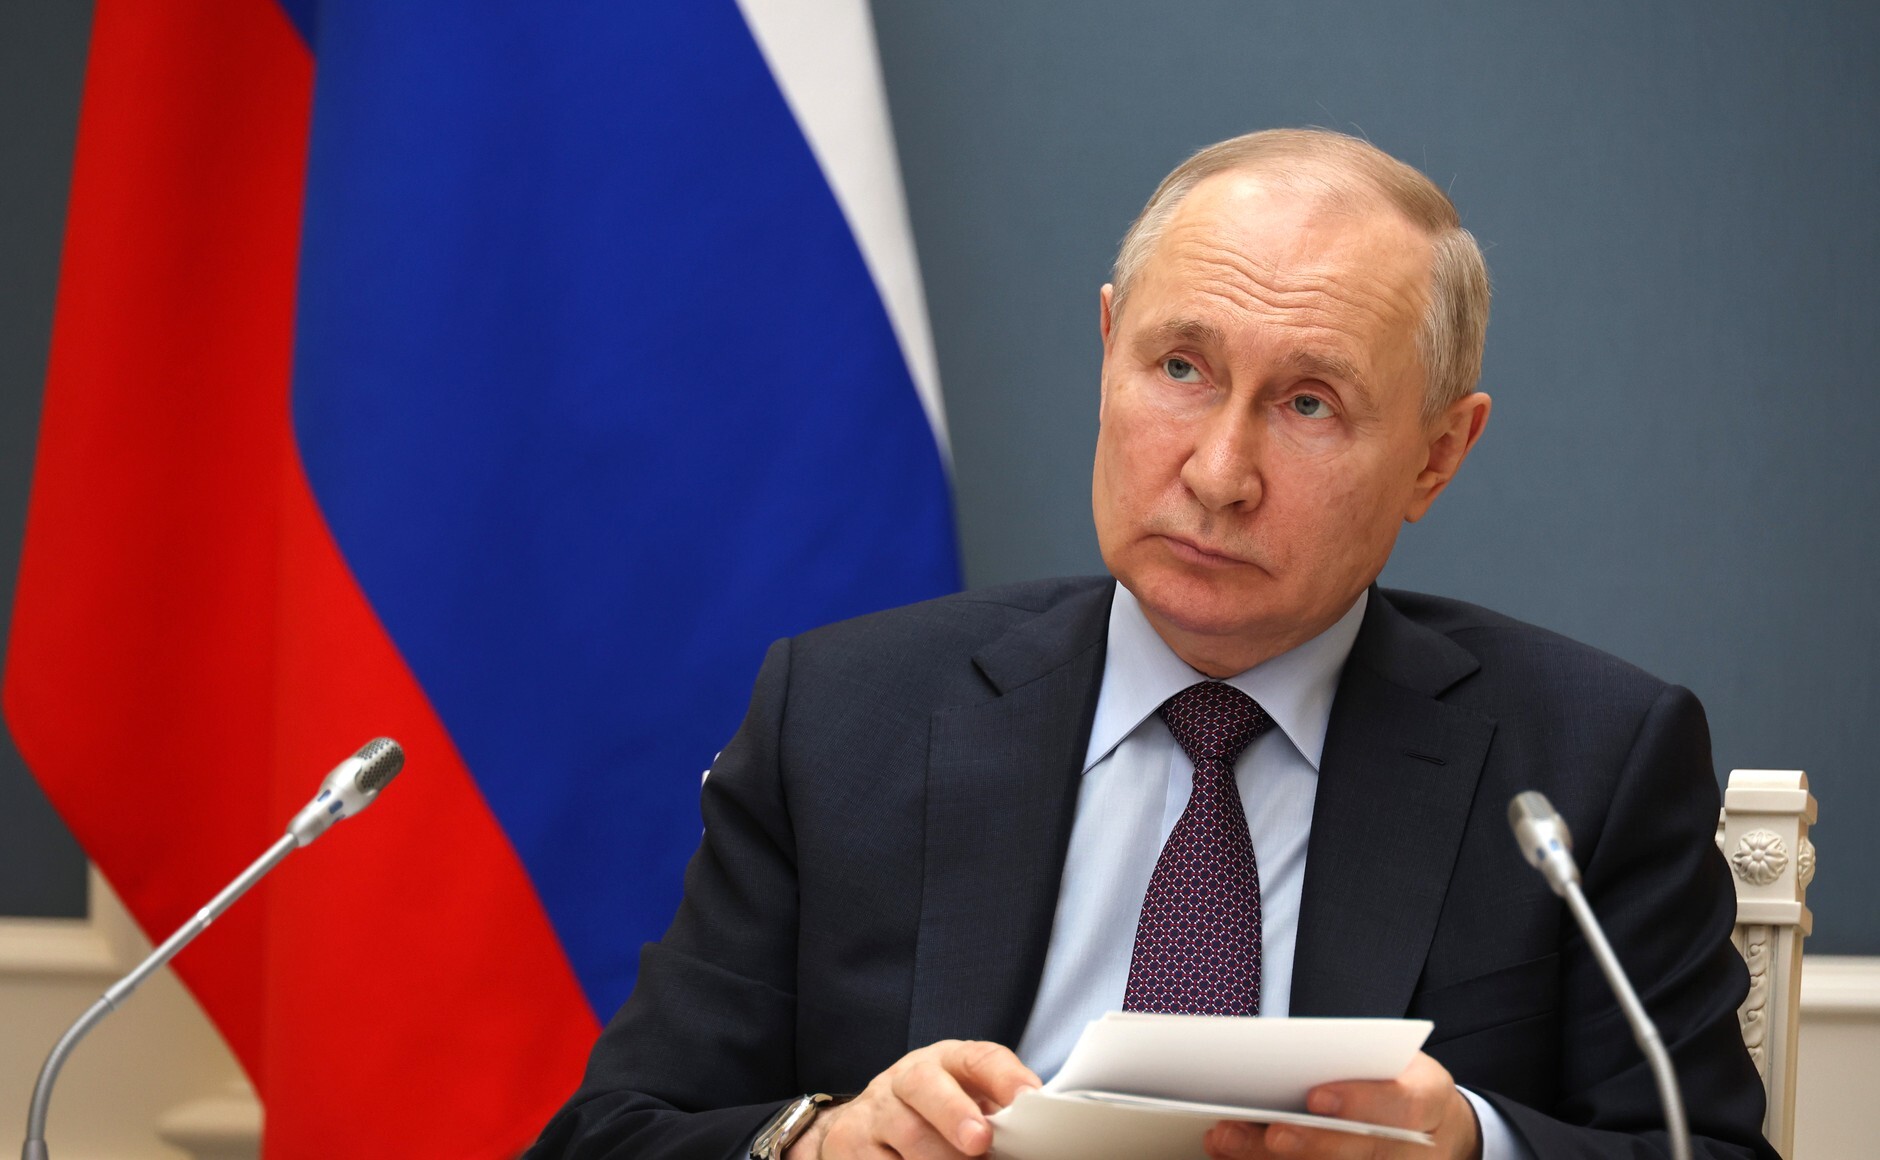 Poutine partage le même état d’esprit que les dirigeants de la guerre froide 